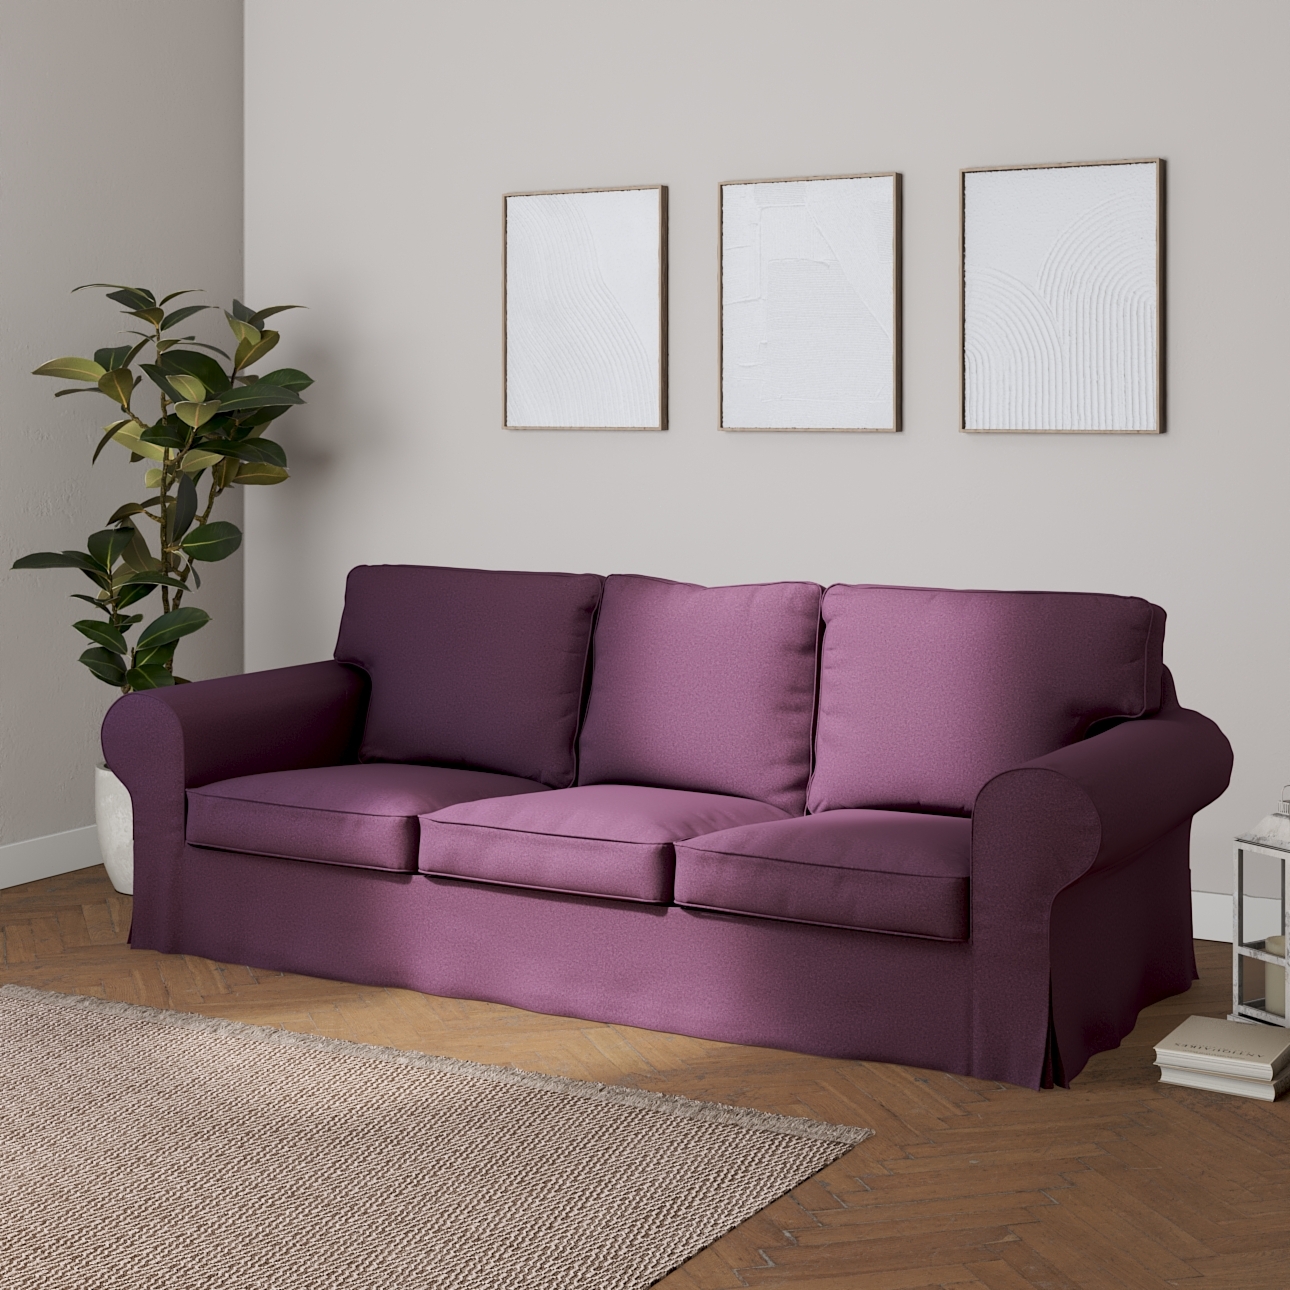 Bezug für Ektorp 3-Sitzer Sofa nicht ausklappbar, pflaume, Sofabezug für Ek günstig online kaufen